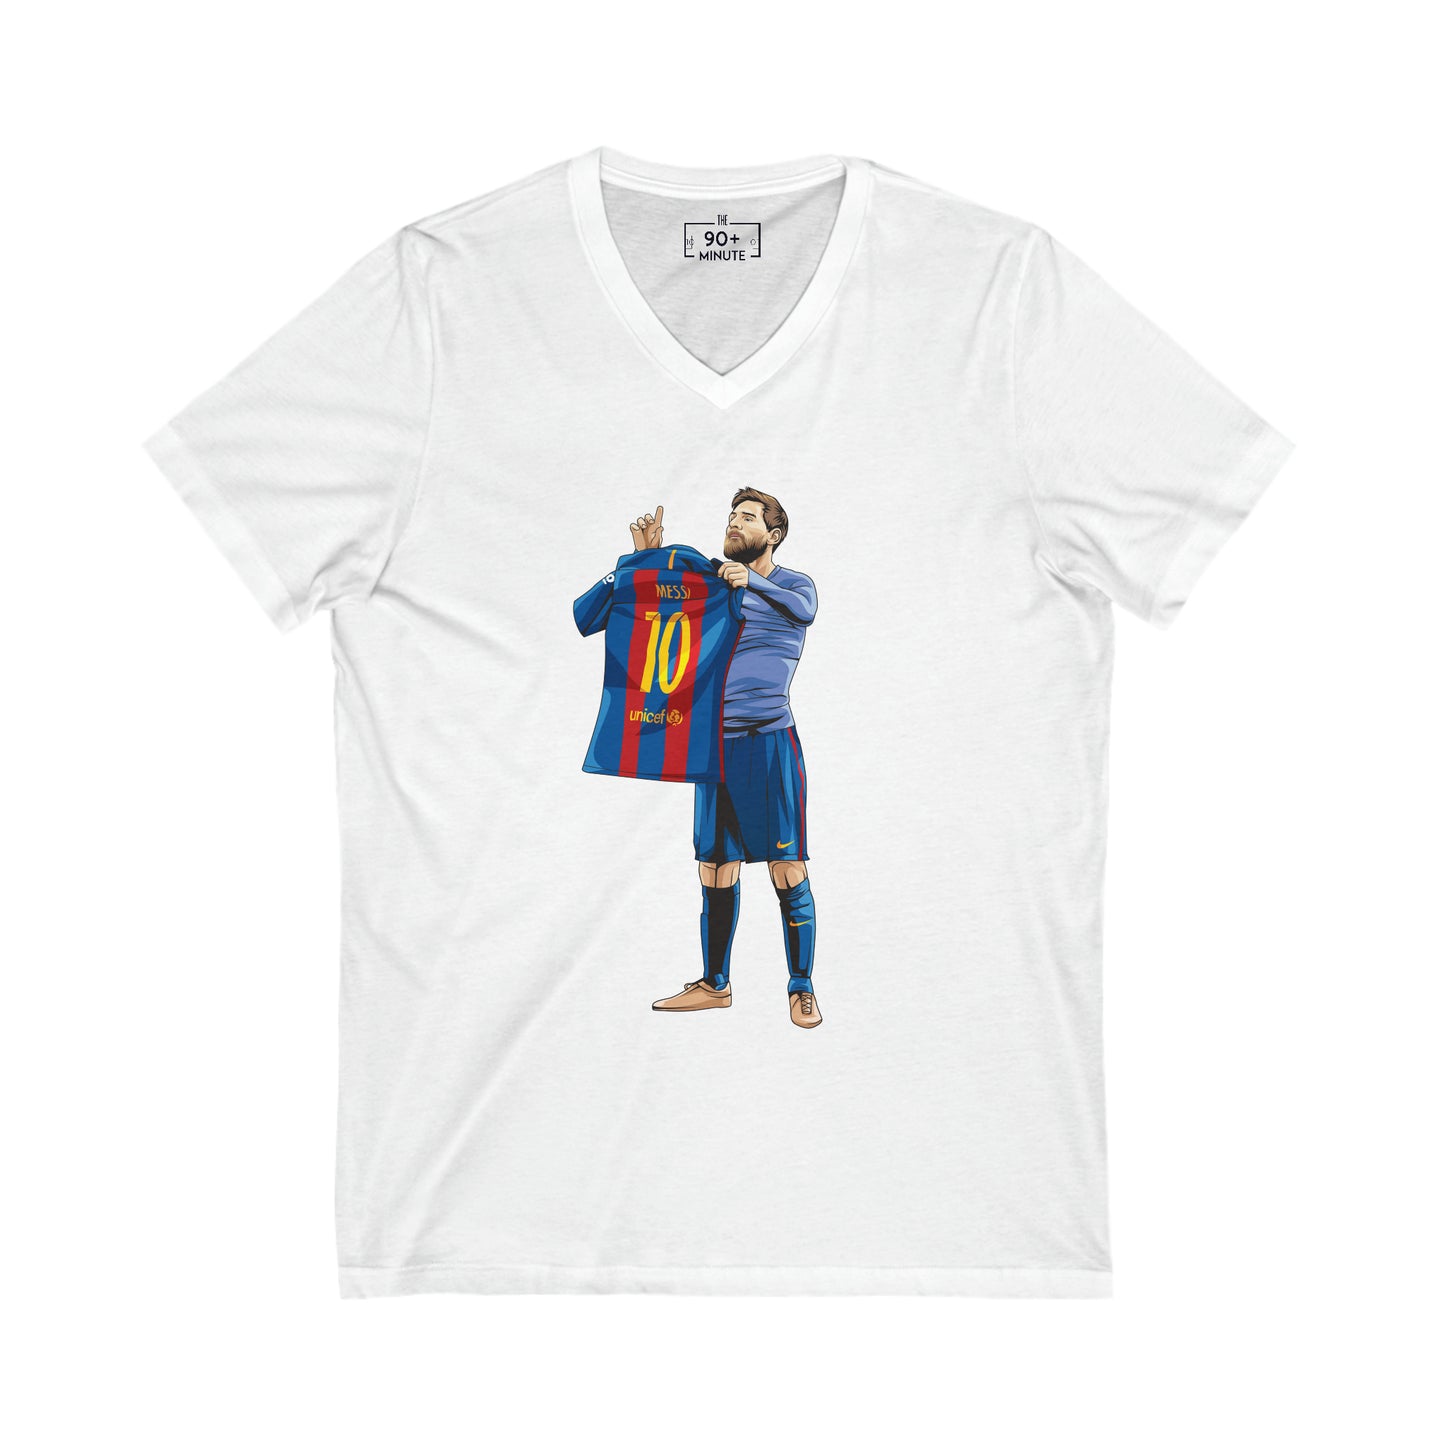 El Clasico Iconic Messi Celebration Unisex Jersey Short Sleeve V-Neck Tee